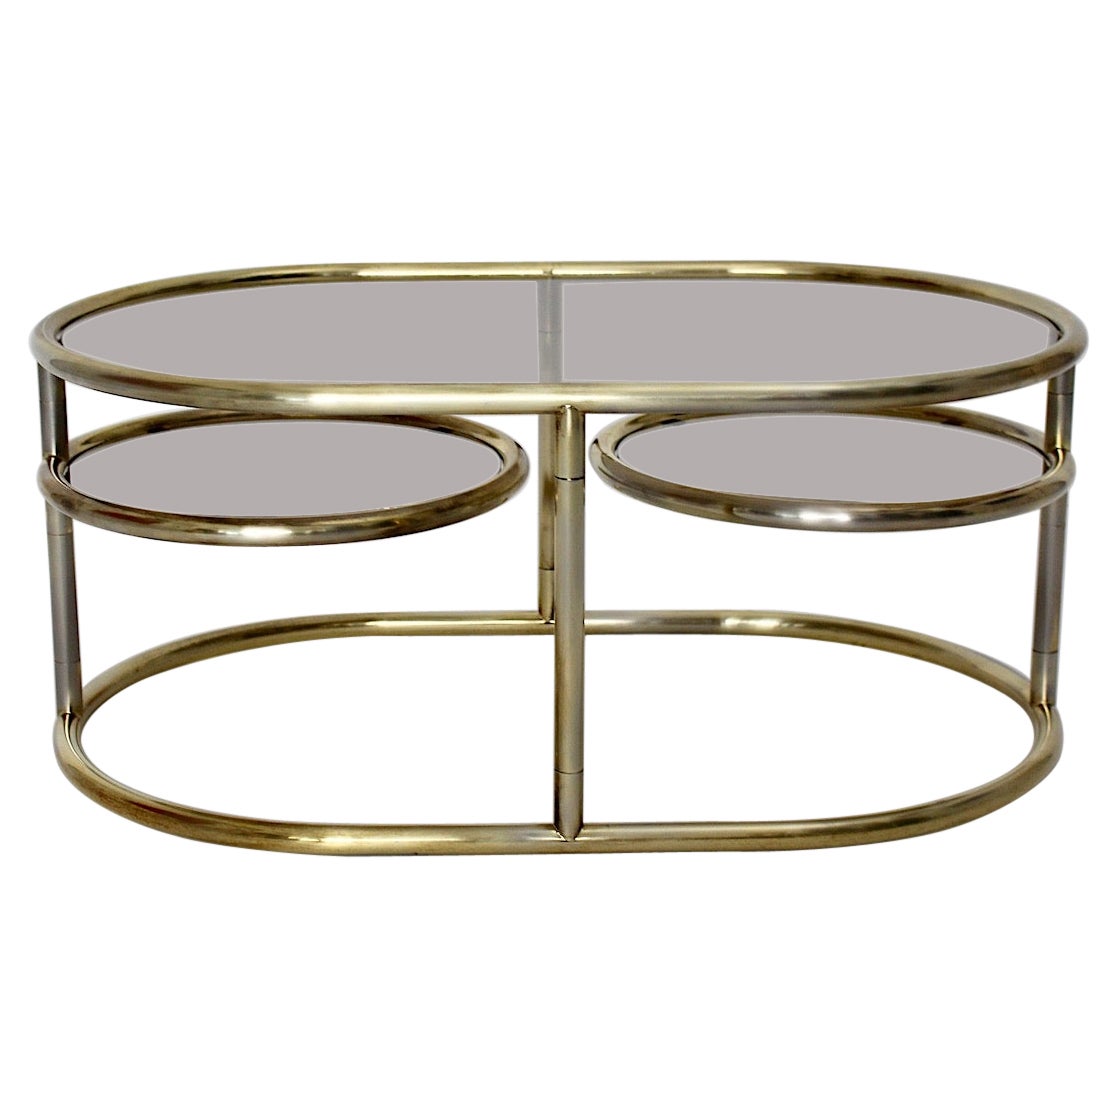 Ovaler Couchtisch/Sofatisch aus goldenem Metallglas im modernistischen Stil, 1960er Jahre